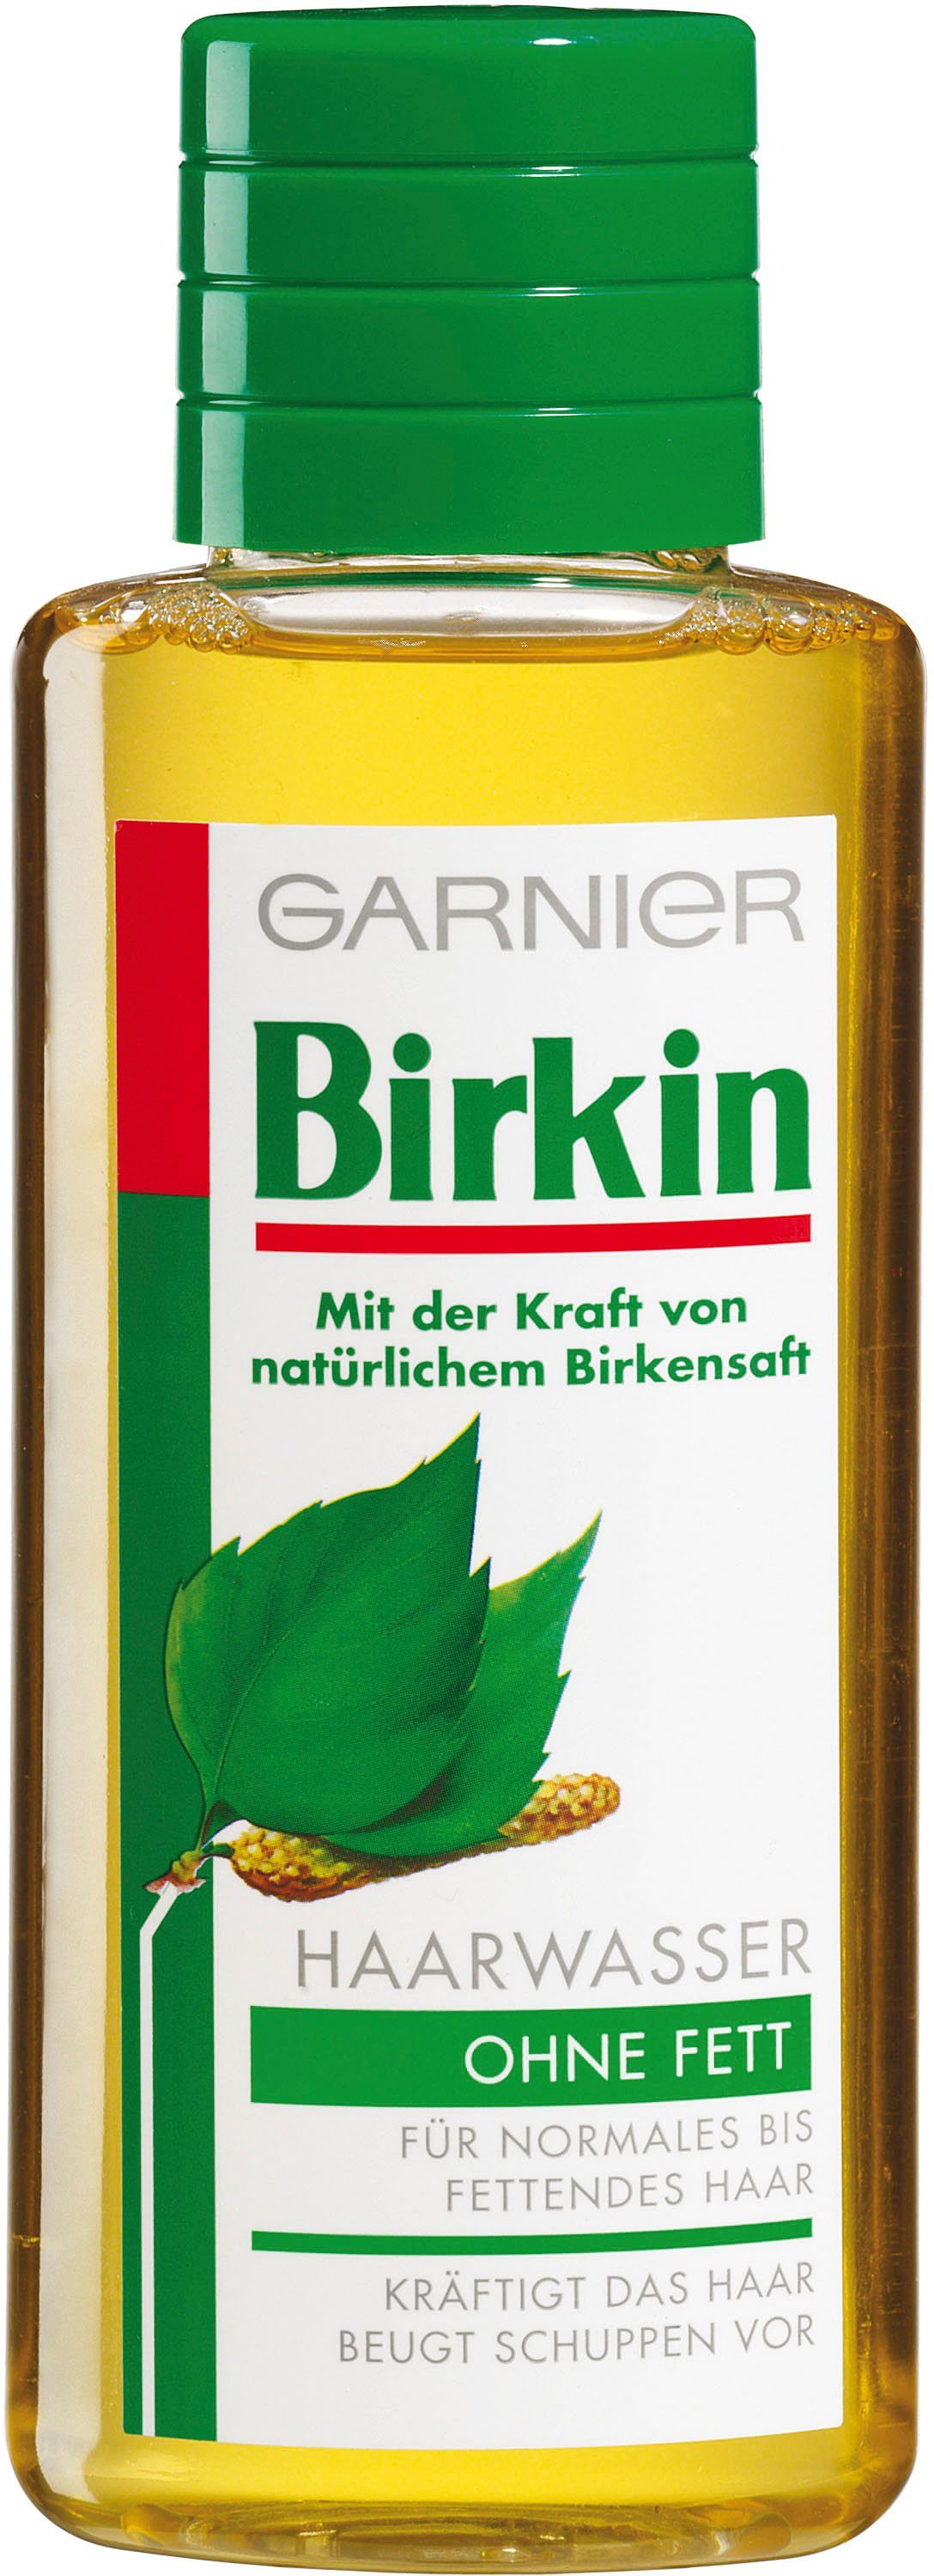 Birkin GARNIER Fett ohne Haarwasser Haarwasser